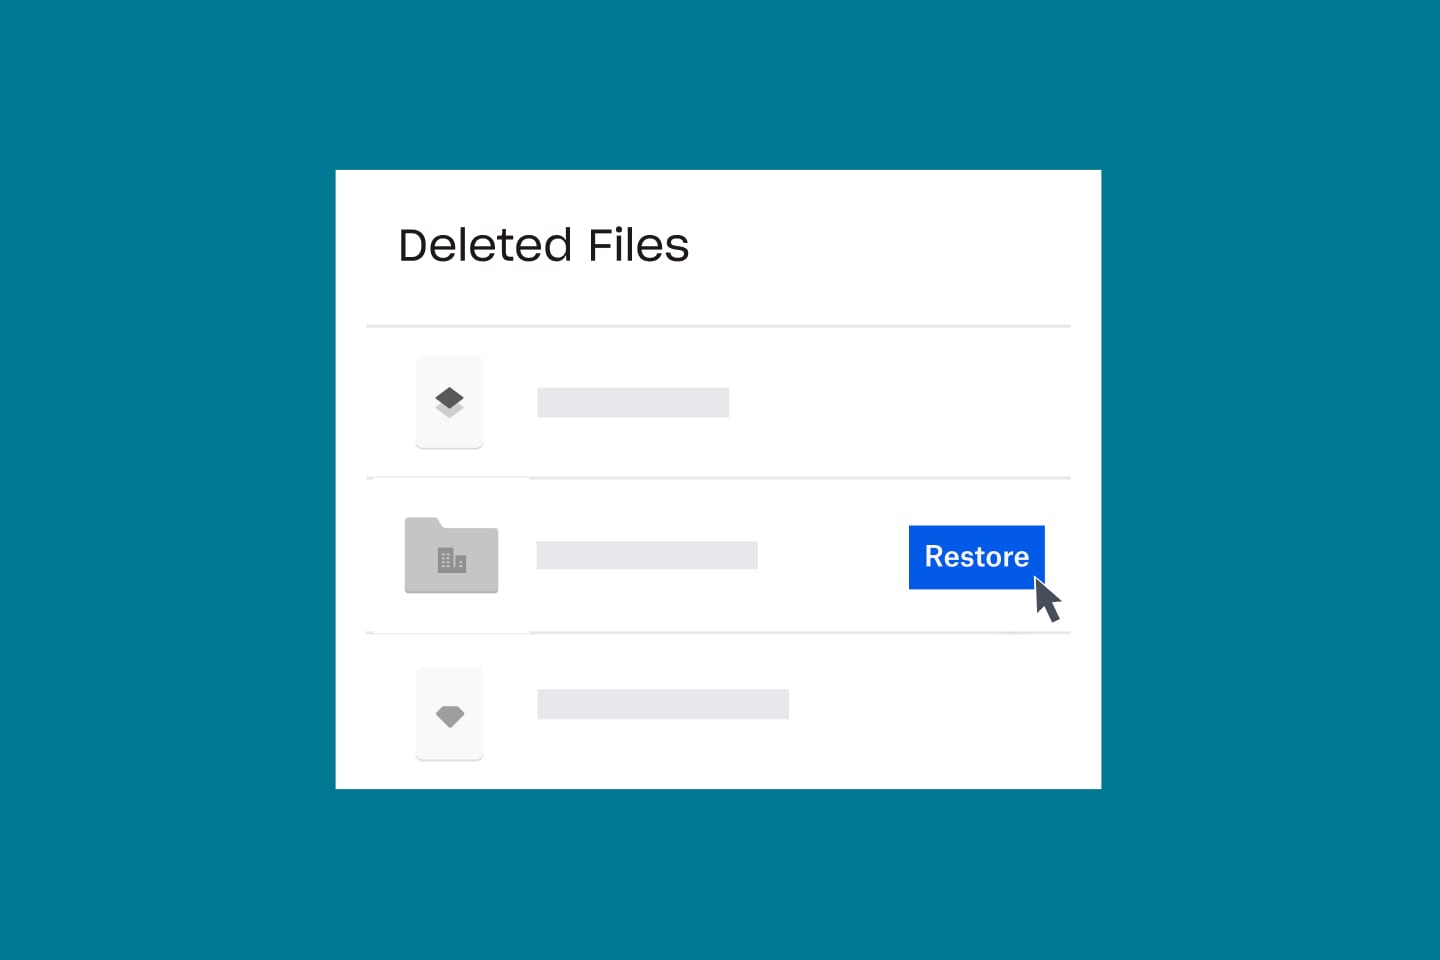 Пользователь восстанавливает удаленные файлы в своем аккаунте Dropbox